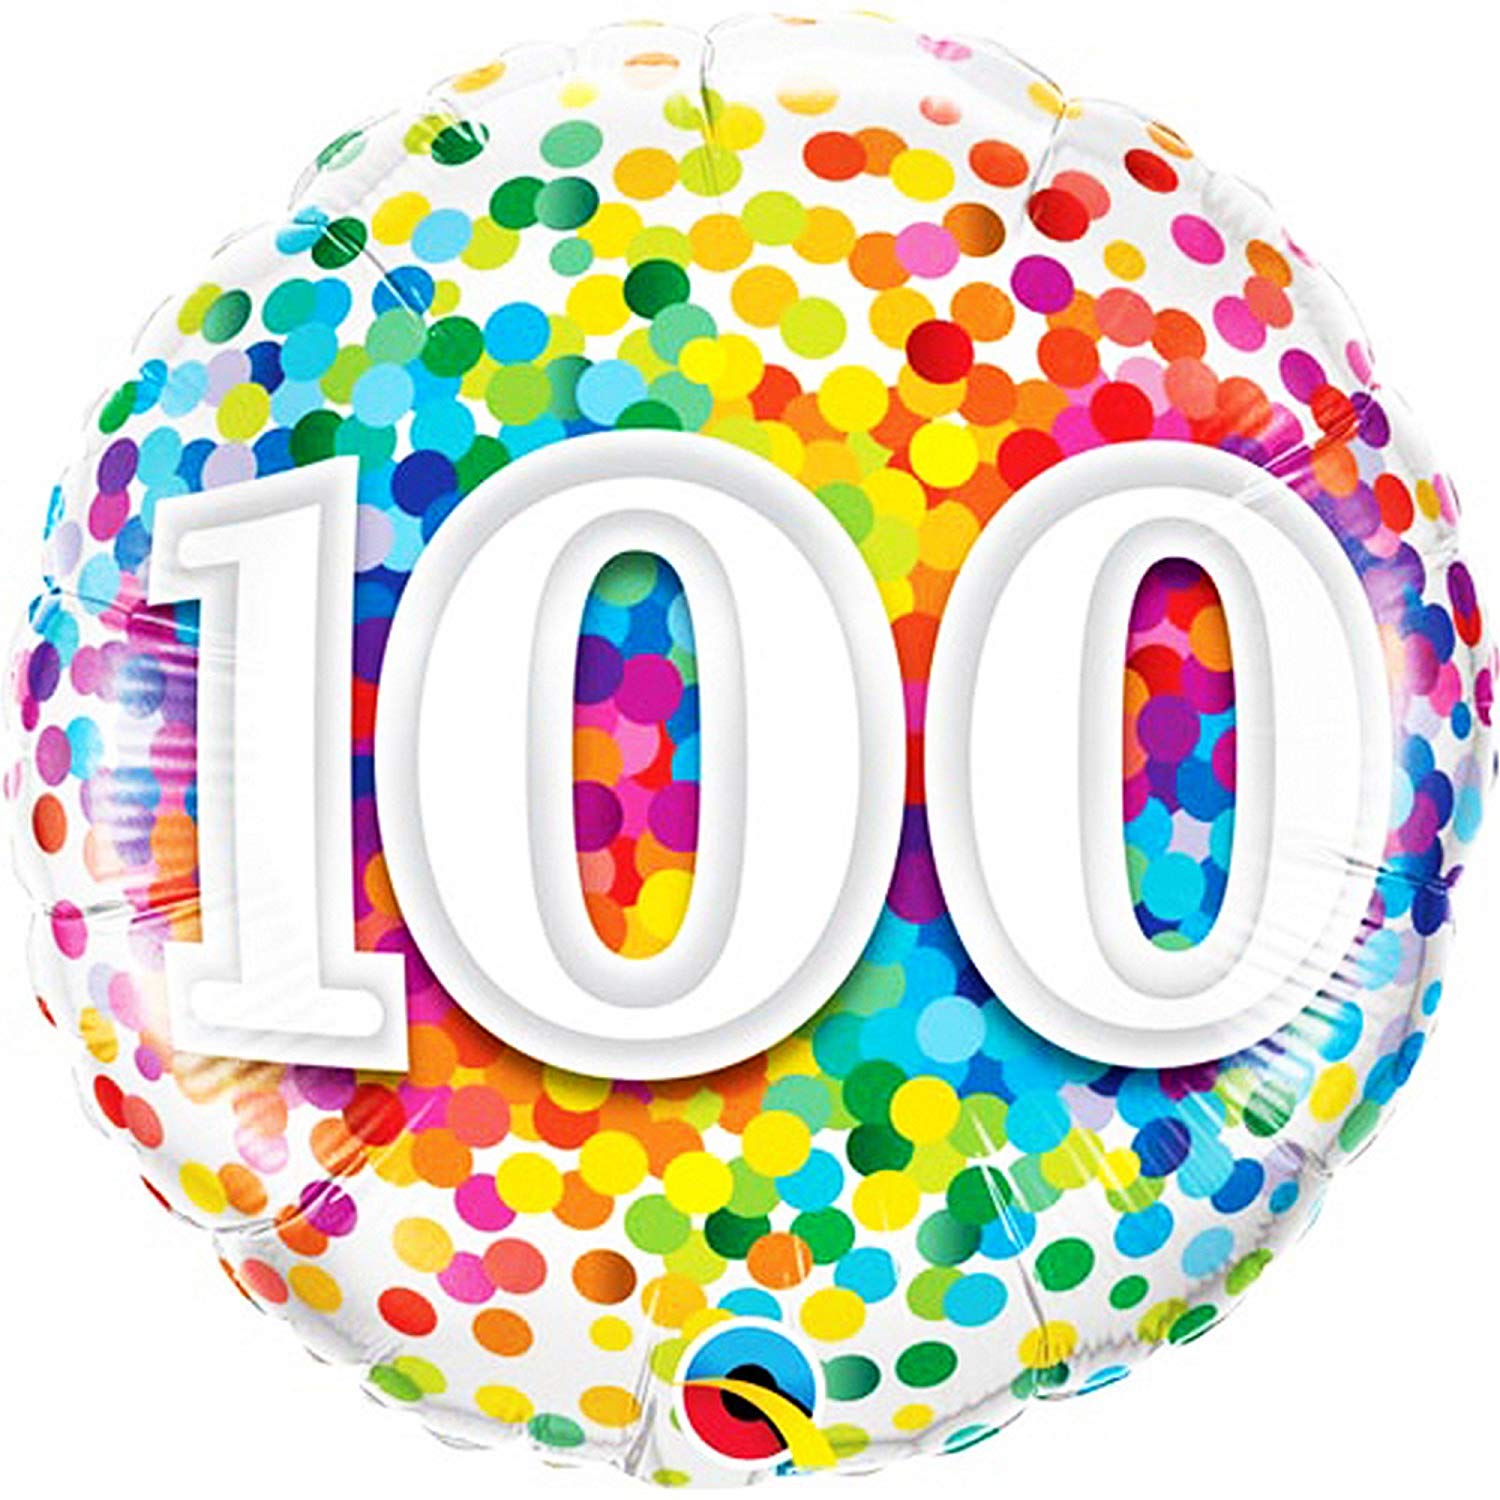 100th Birthday SVG